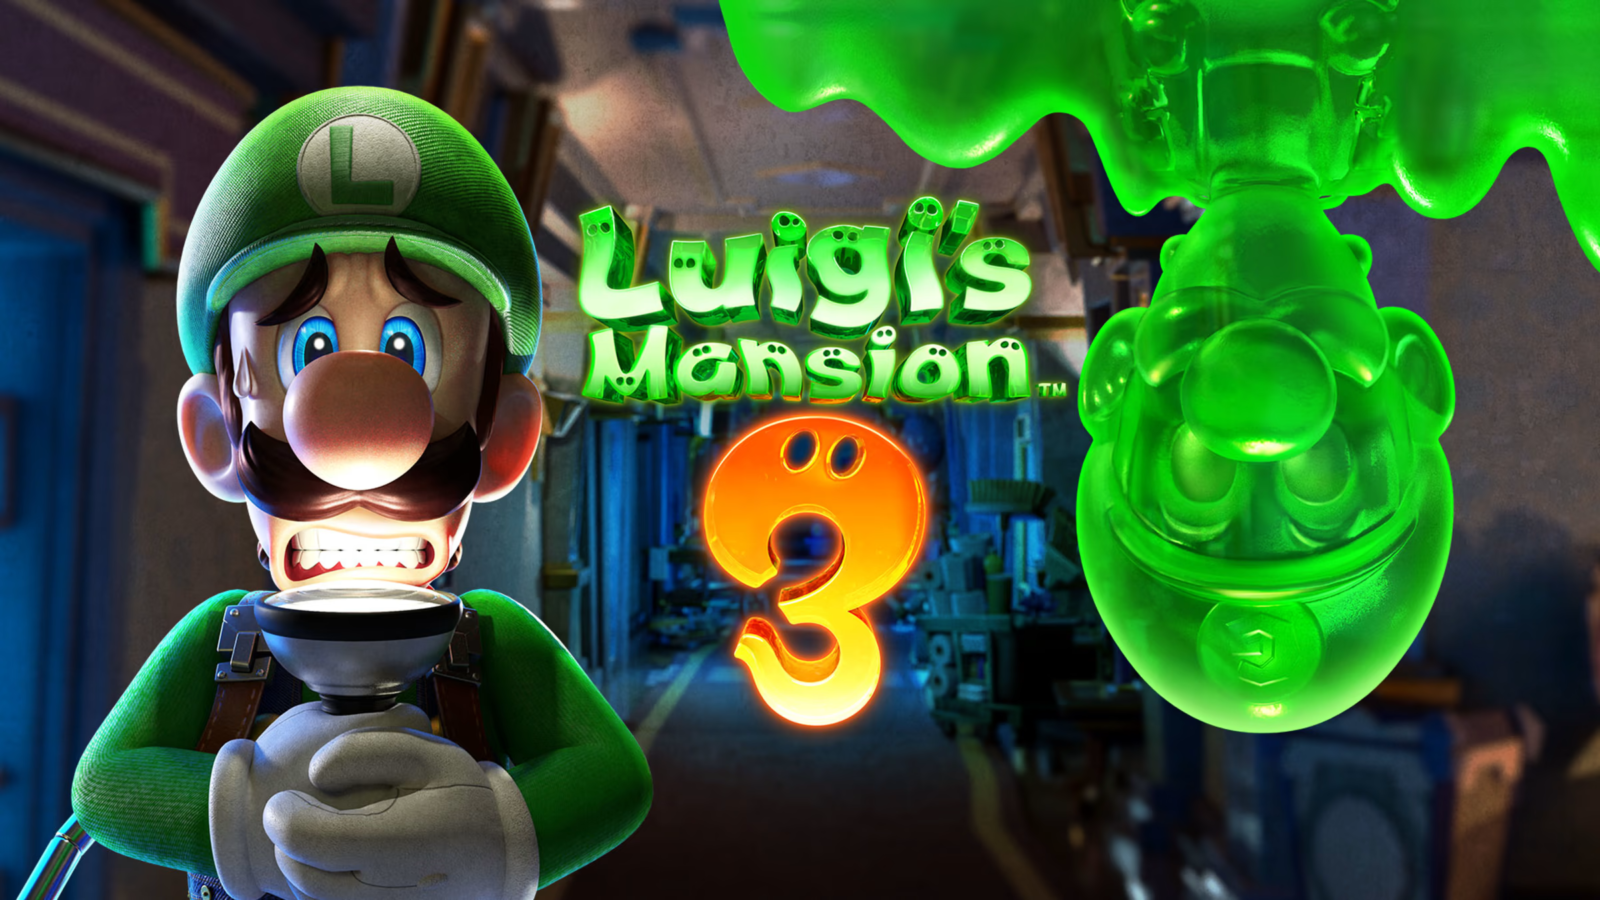 Digital Foundry nomeia Luigi's Mansion 3 como o jogo mais impressionante do Switch